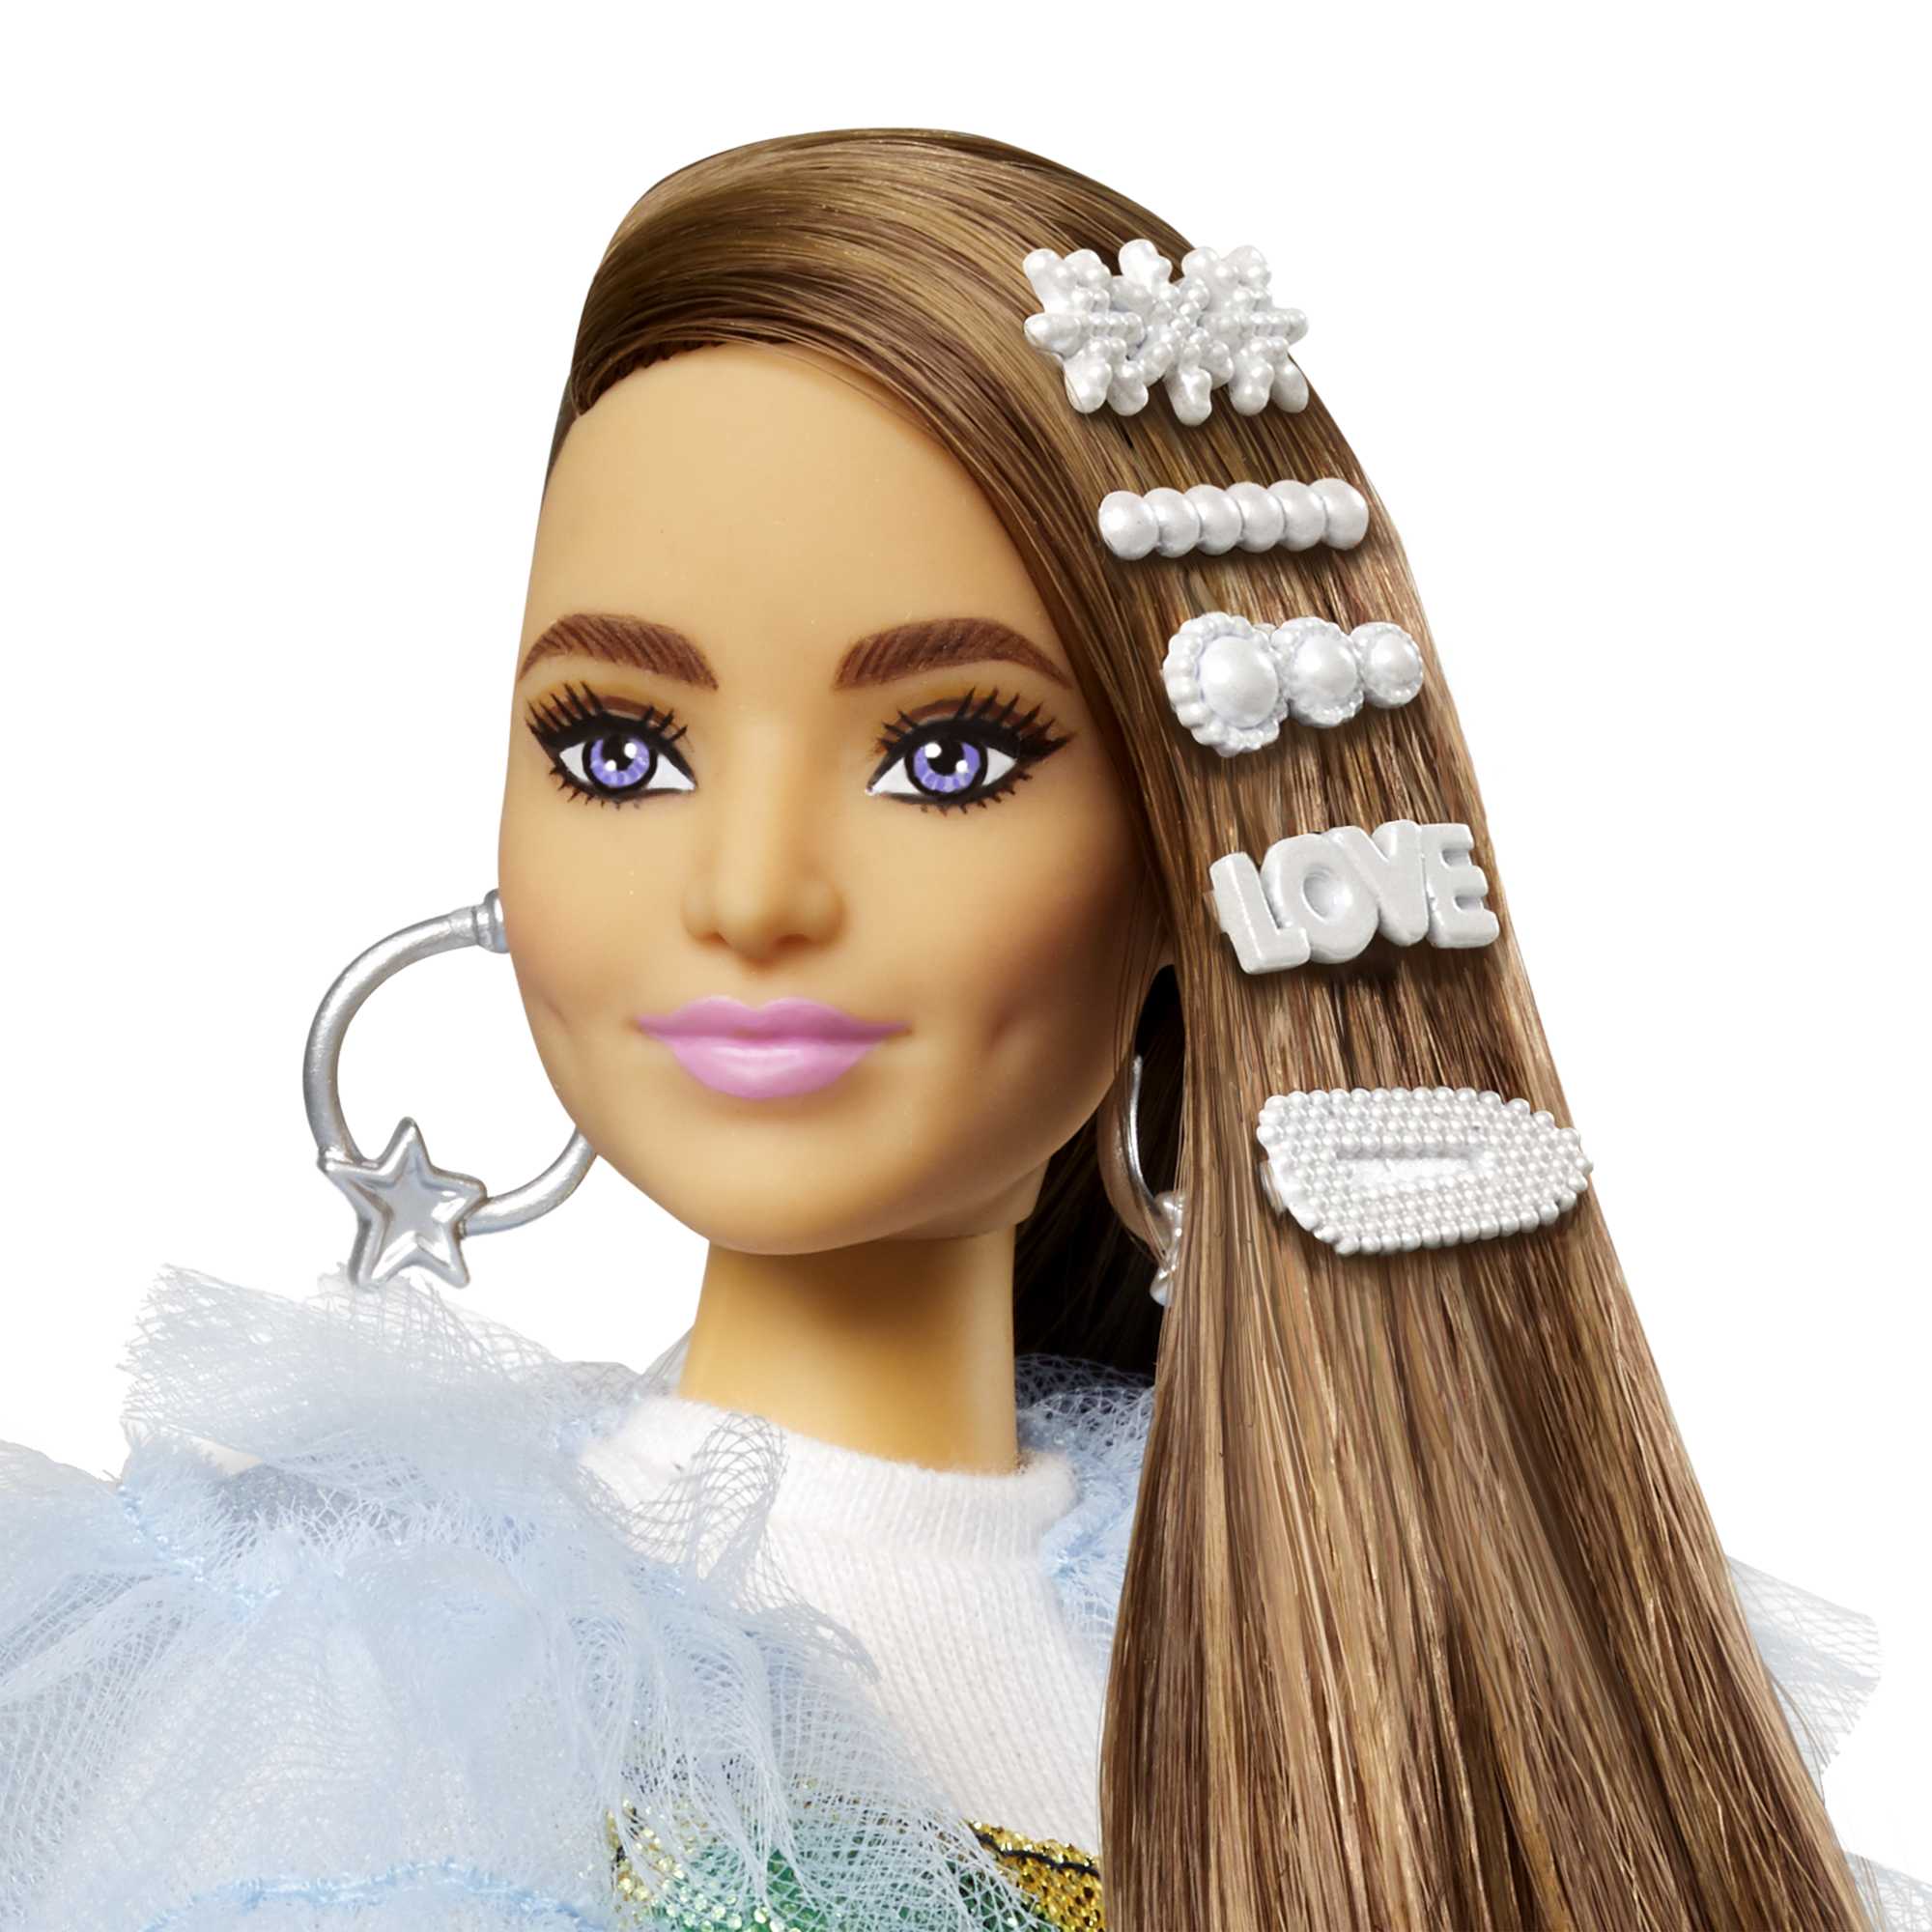 Barbie extra - poupée tresses blondes multicolore Mattel